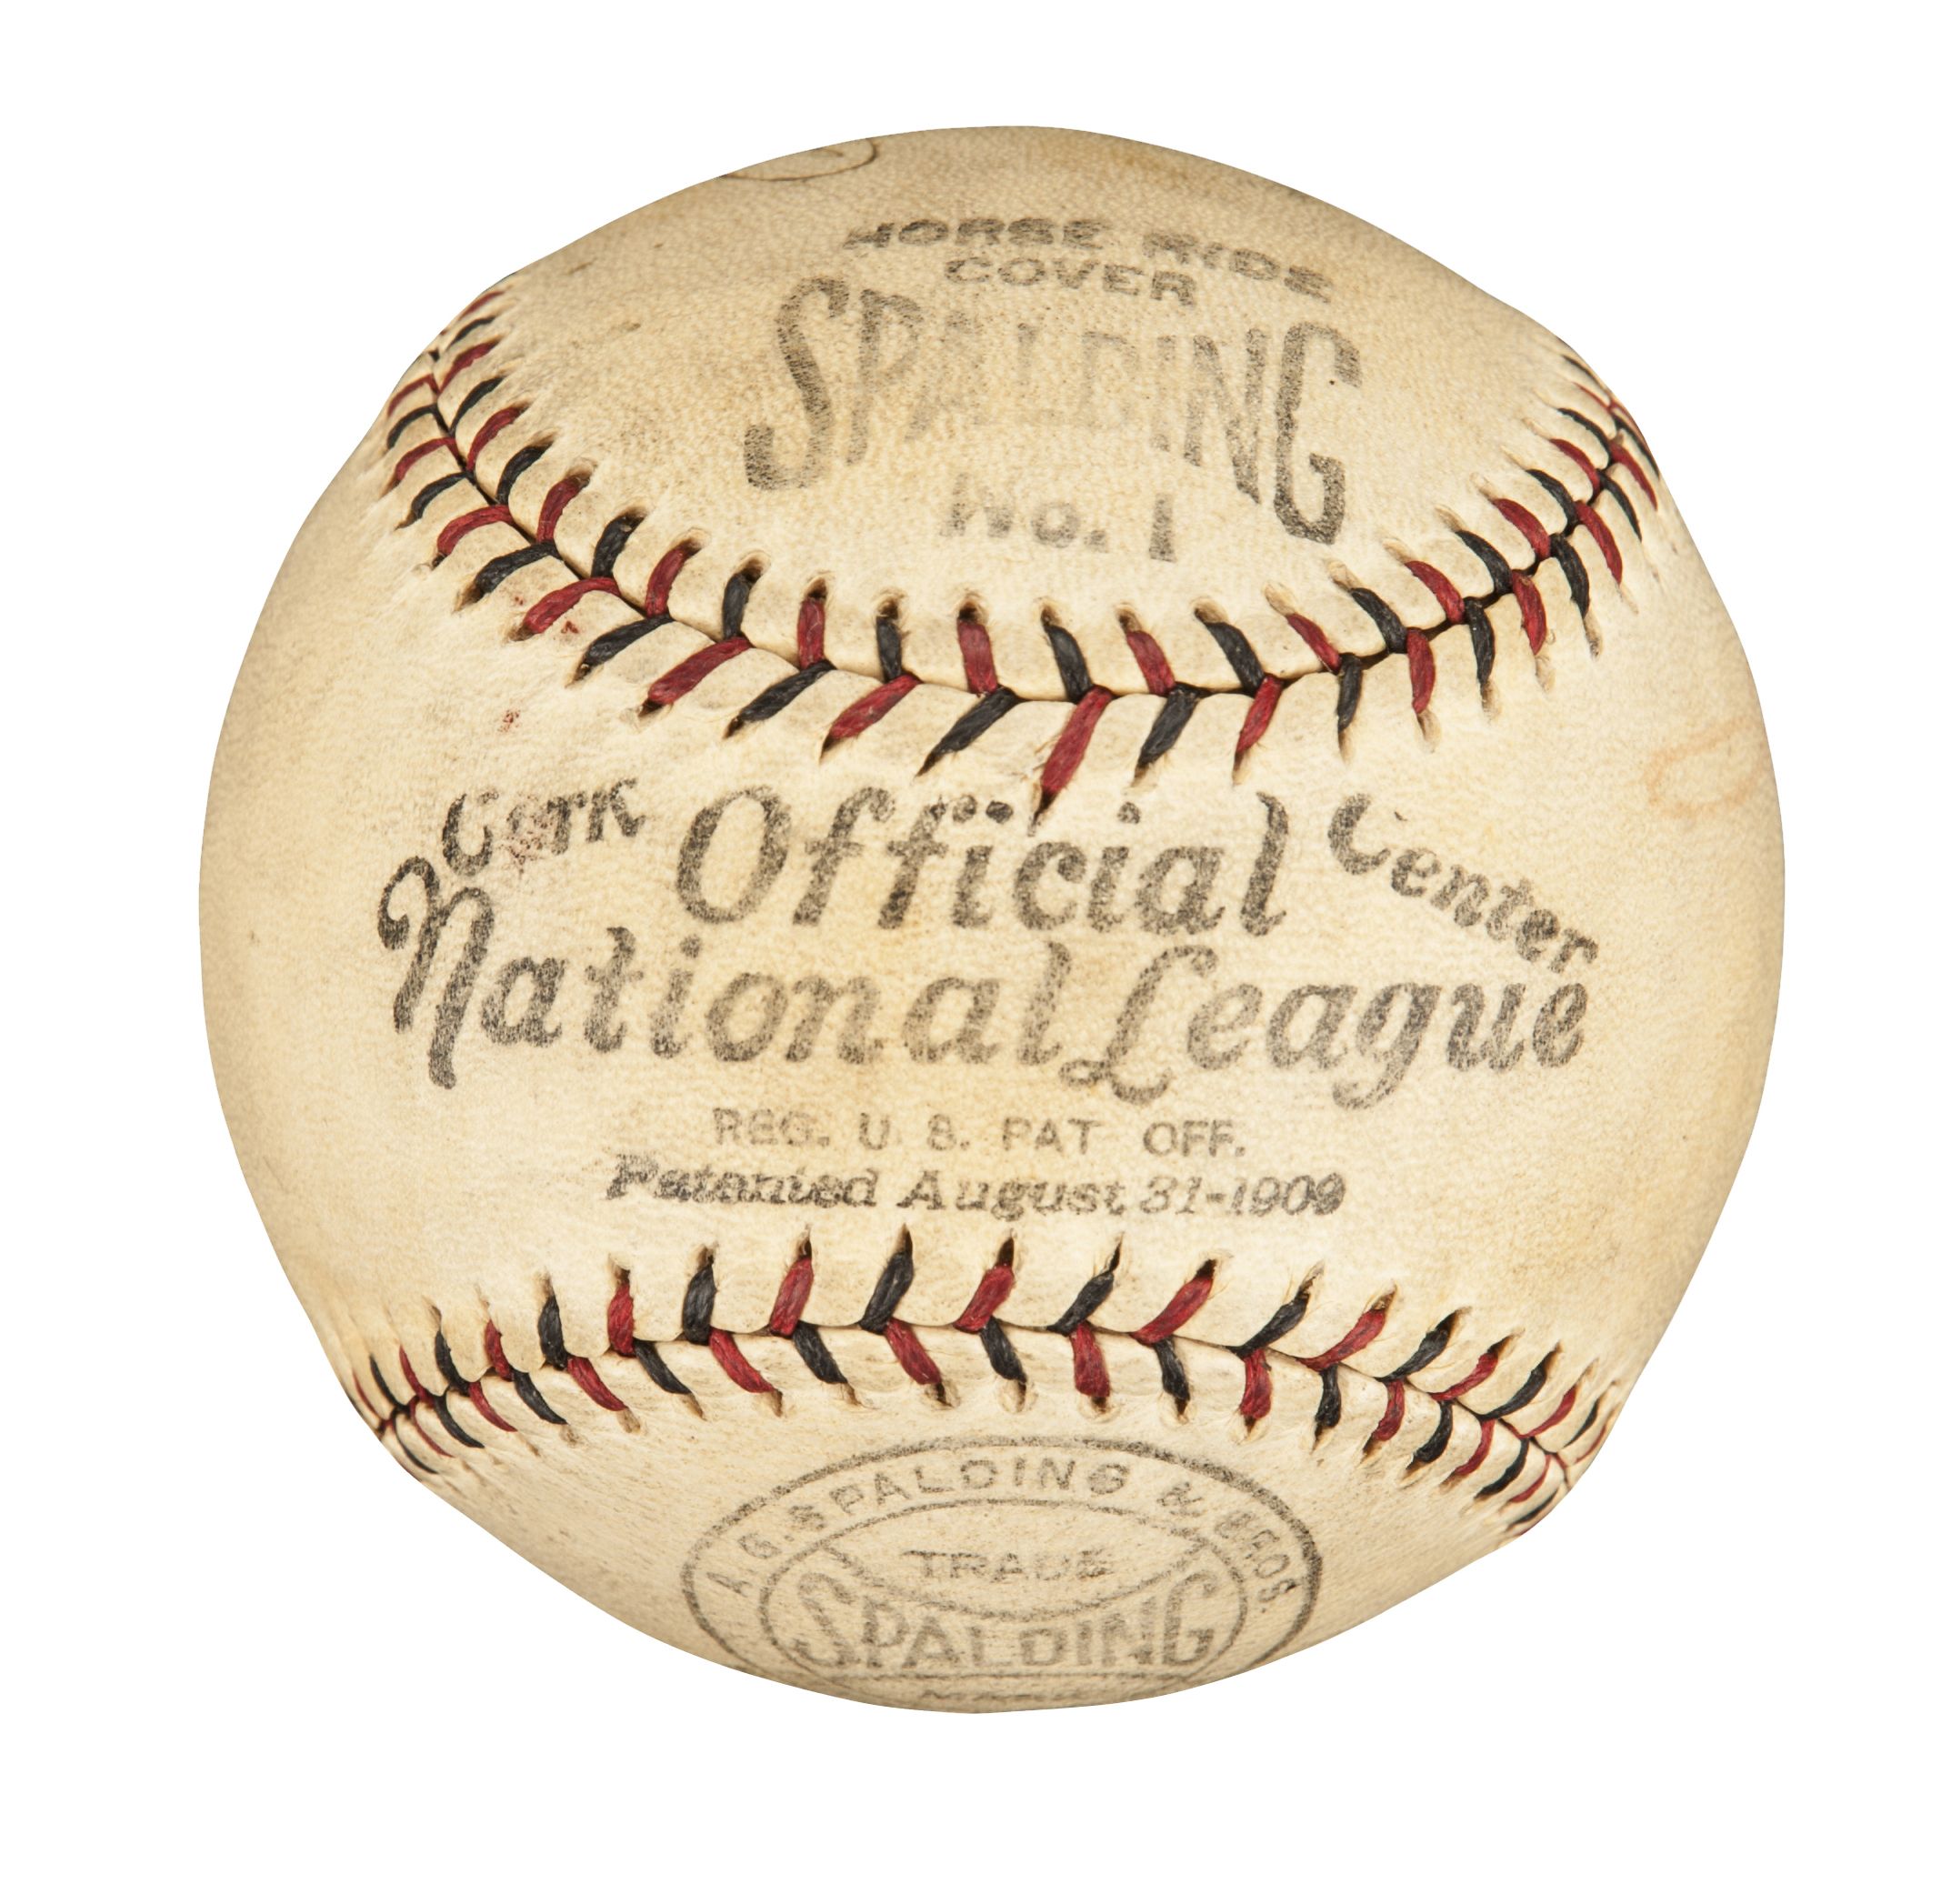 Vintage Signed Baseballs 34